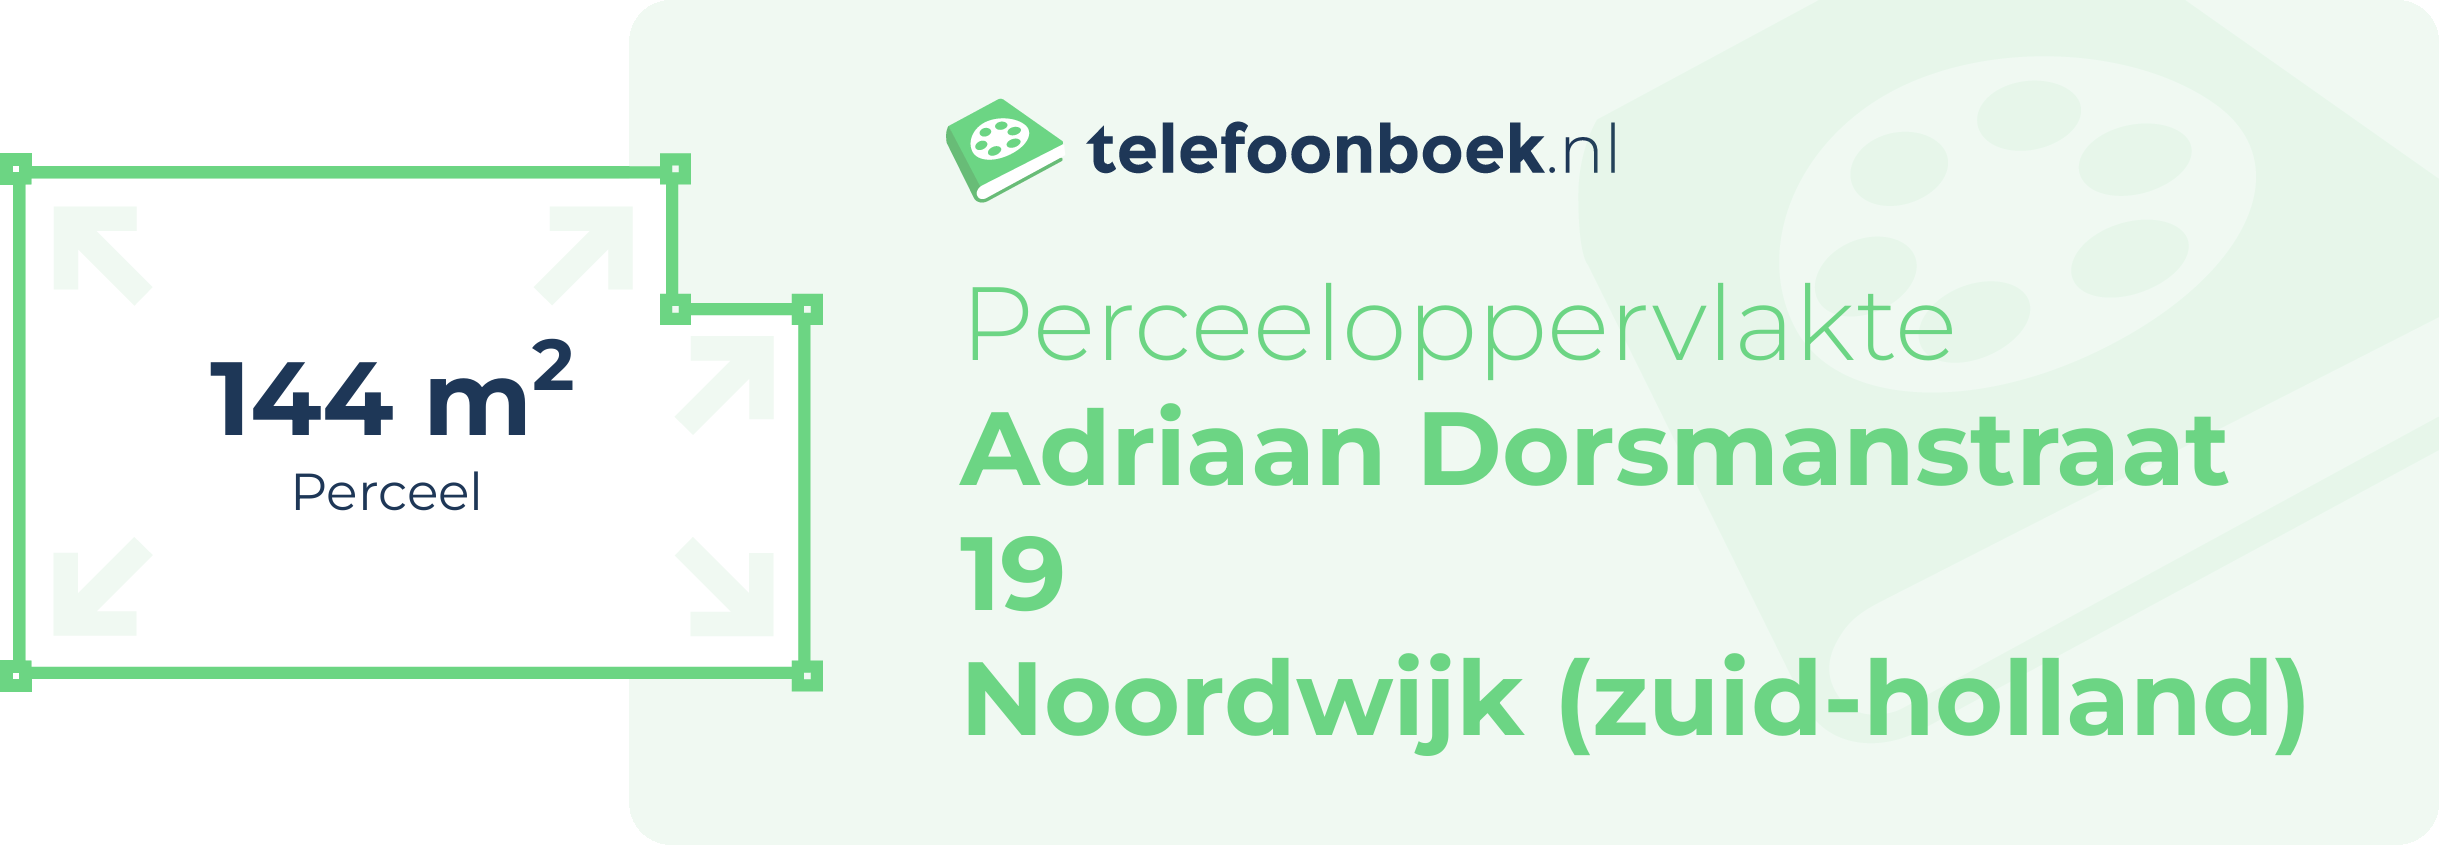 Perceeloppervlakte Adriaan Dorsmanstraat 19 Noordwijk (Zuid-Holland)